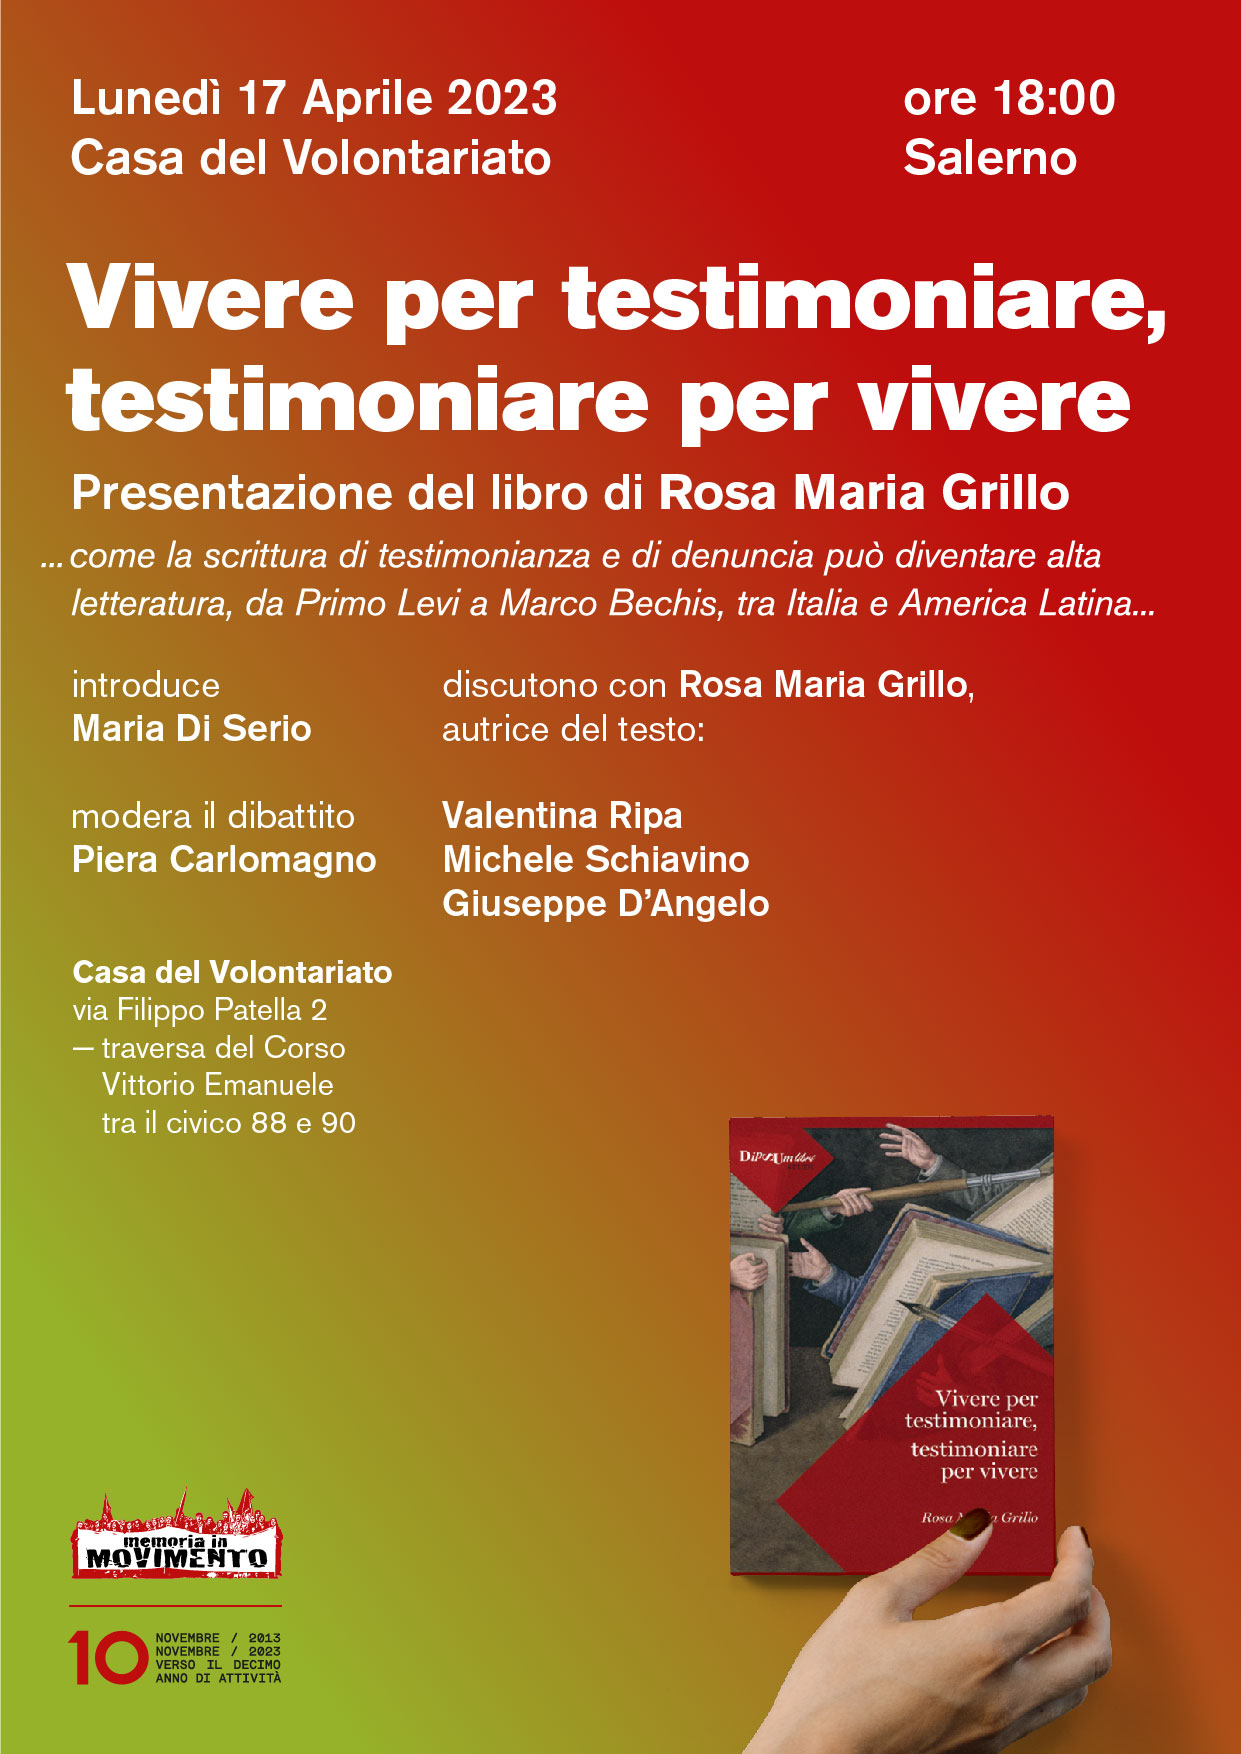 Salerno: Memoria in Movimento, presentazione libro di Rosa Maria Grillo “Vivere per testimoniare, testimoniare per vivere”